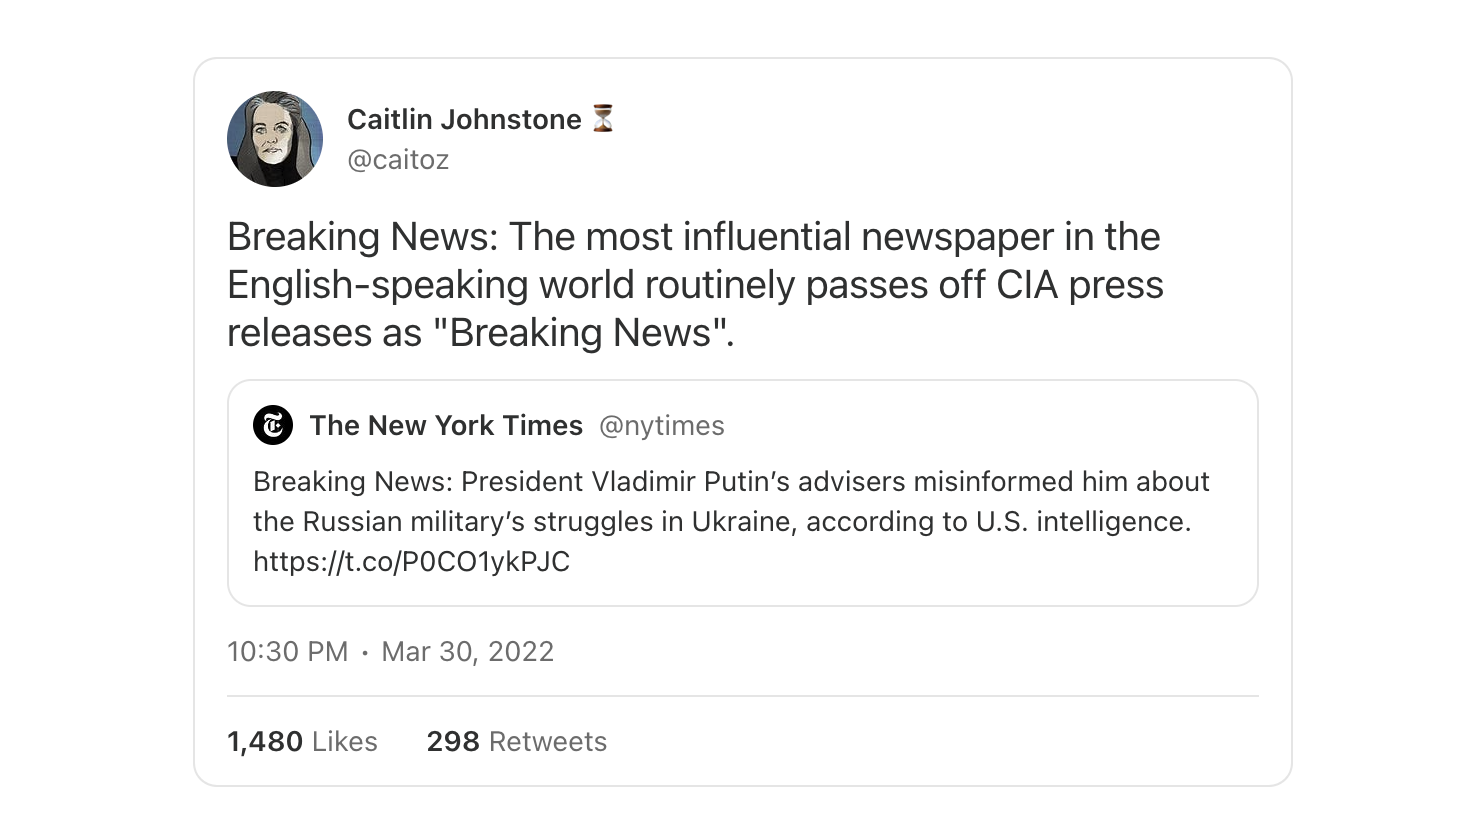 Screenshot Berlin 24/7 - Post von Caitlin Johnstone,&nbsp;https://x.com/caitoz/status/1509296931558010881 - Deutsche Übersetzung: "Aktuelle Nachrichten: Die einflussreichste Zeitung im englischsprachigen Raum gibt Pressemitteilungen der CIA routinemäßig als „Breaking News“ aus."